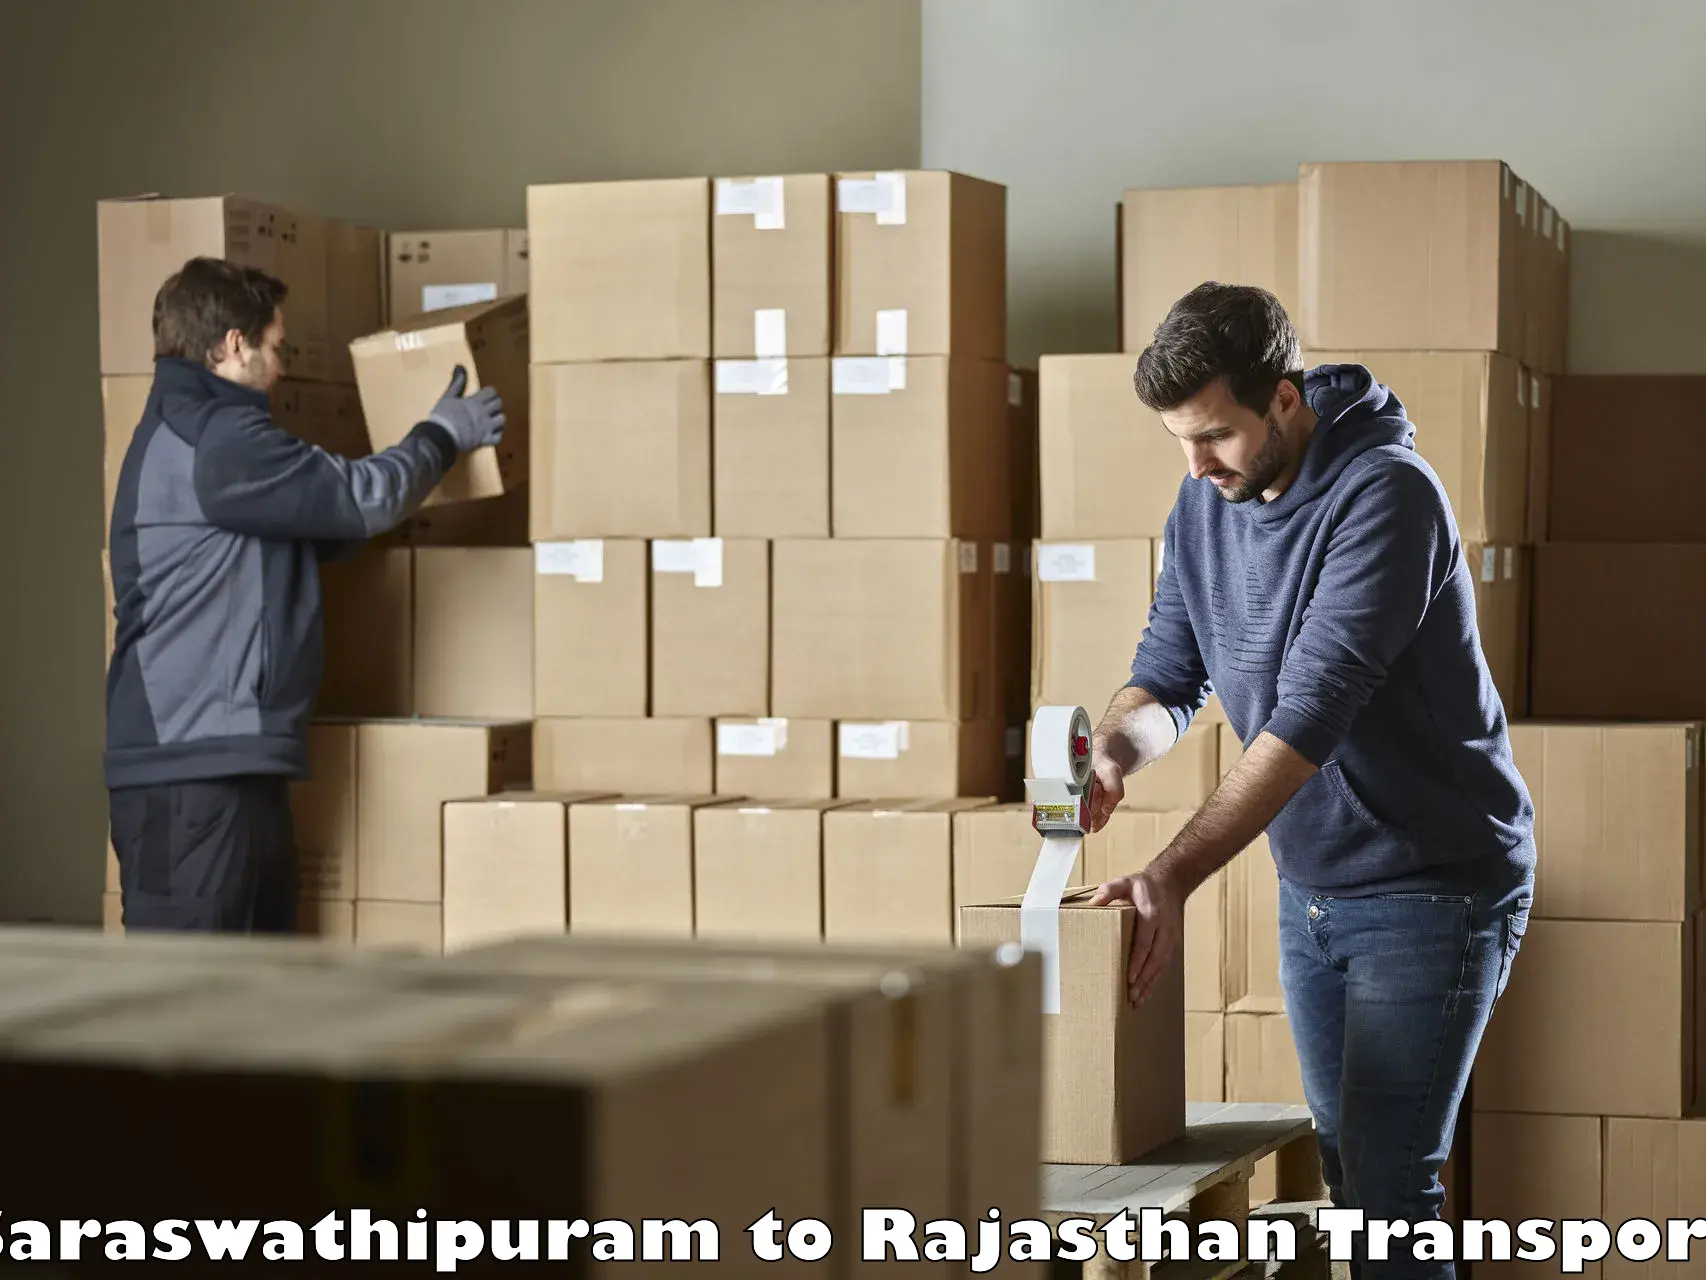 Express transport services Saraswathipuram to Rajasthan